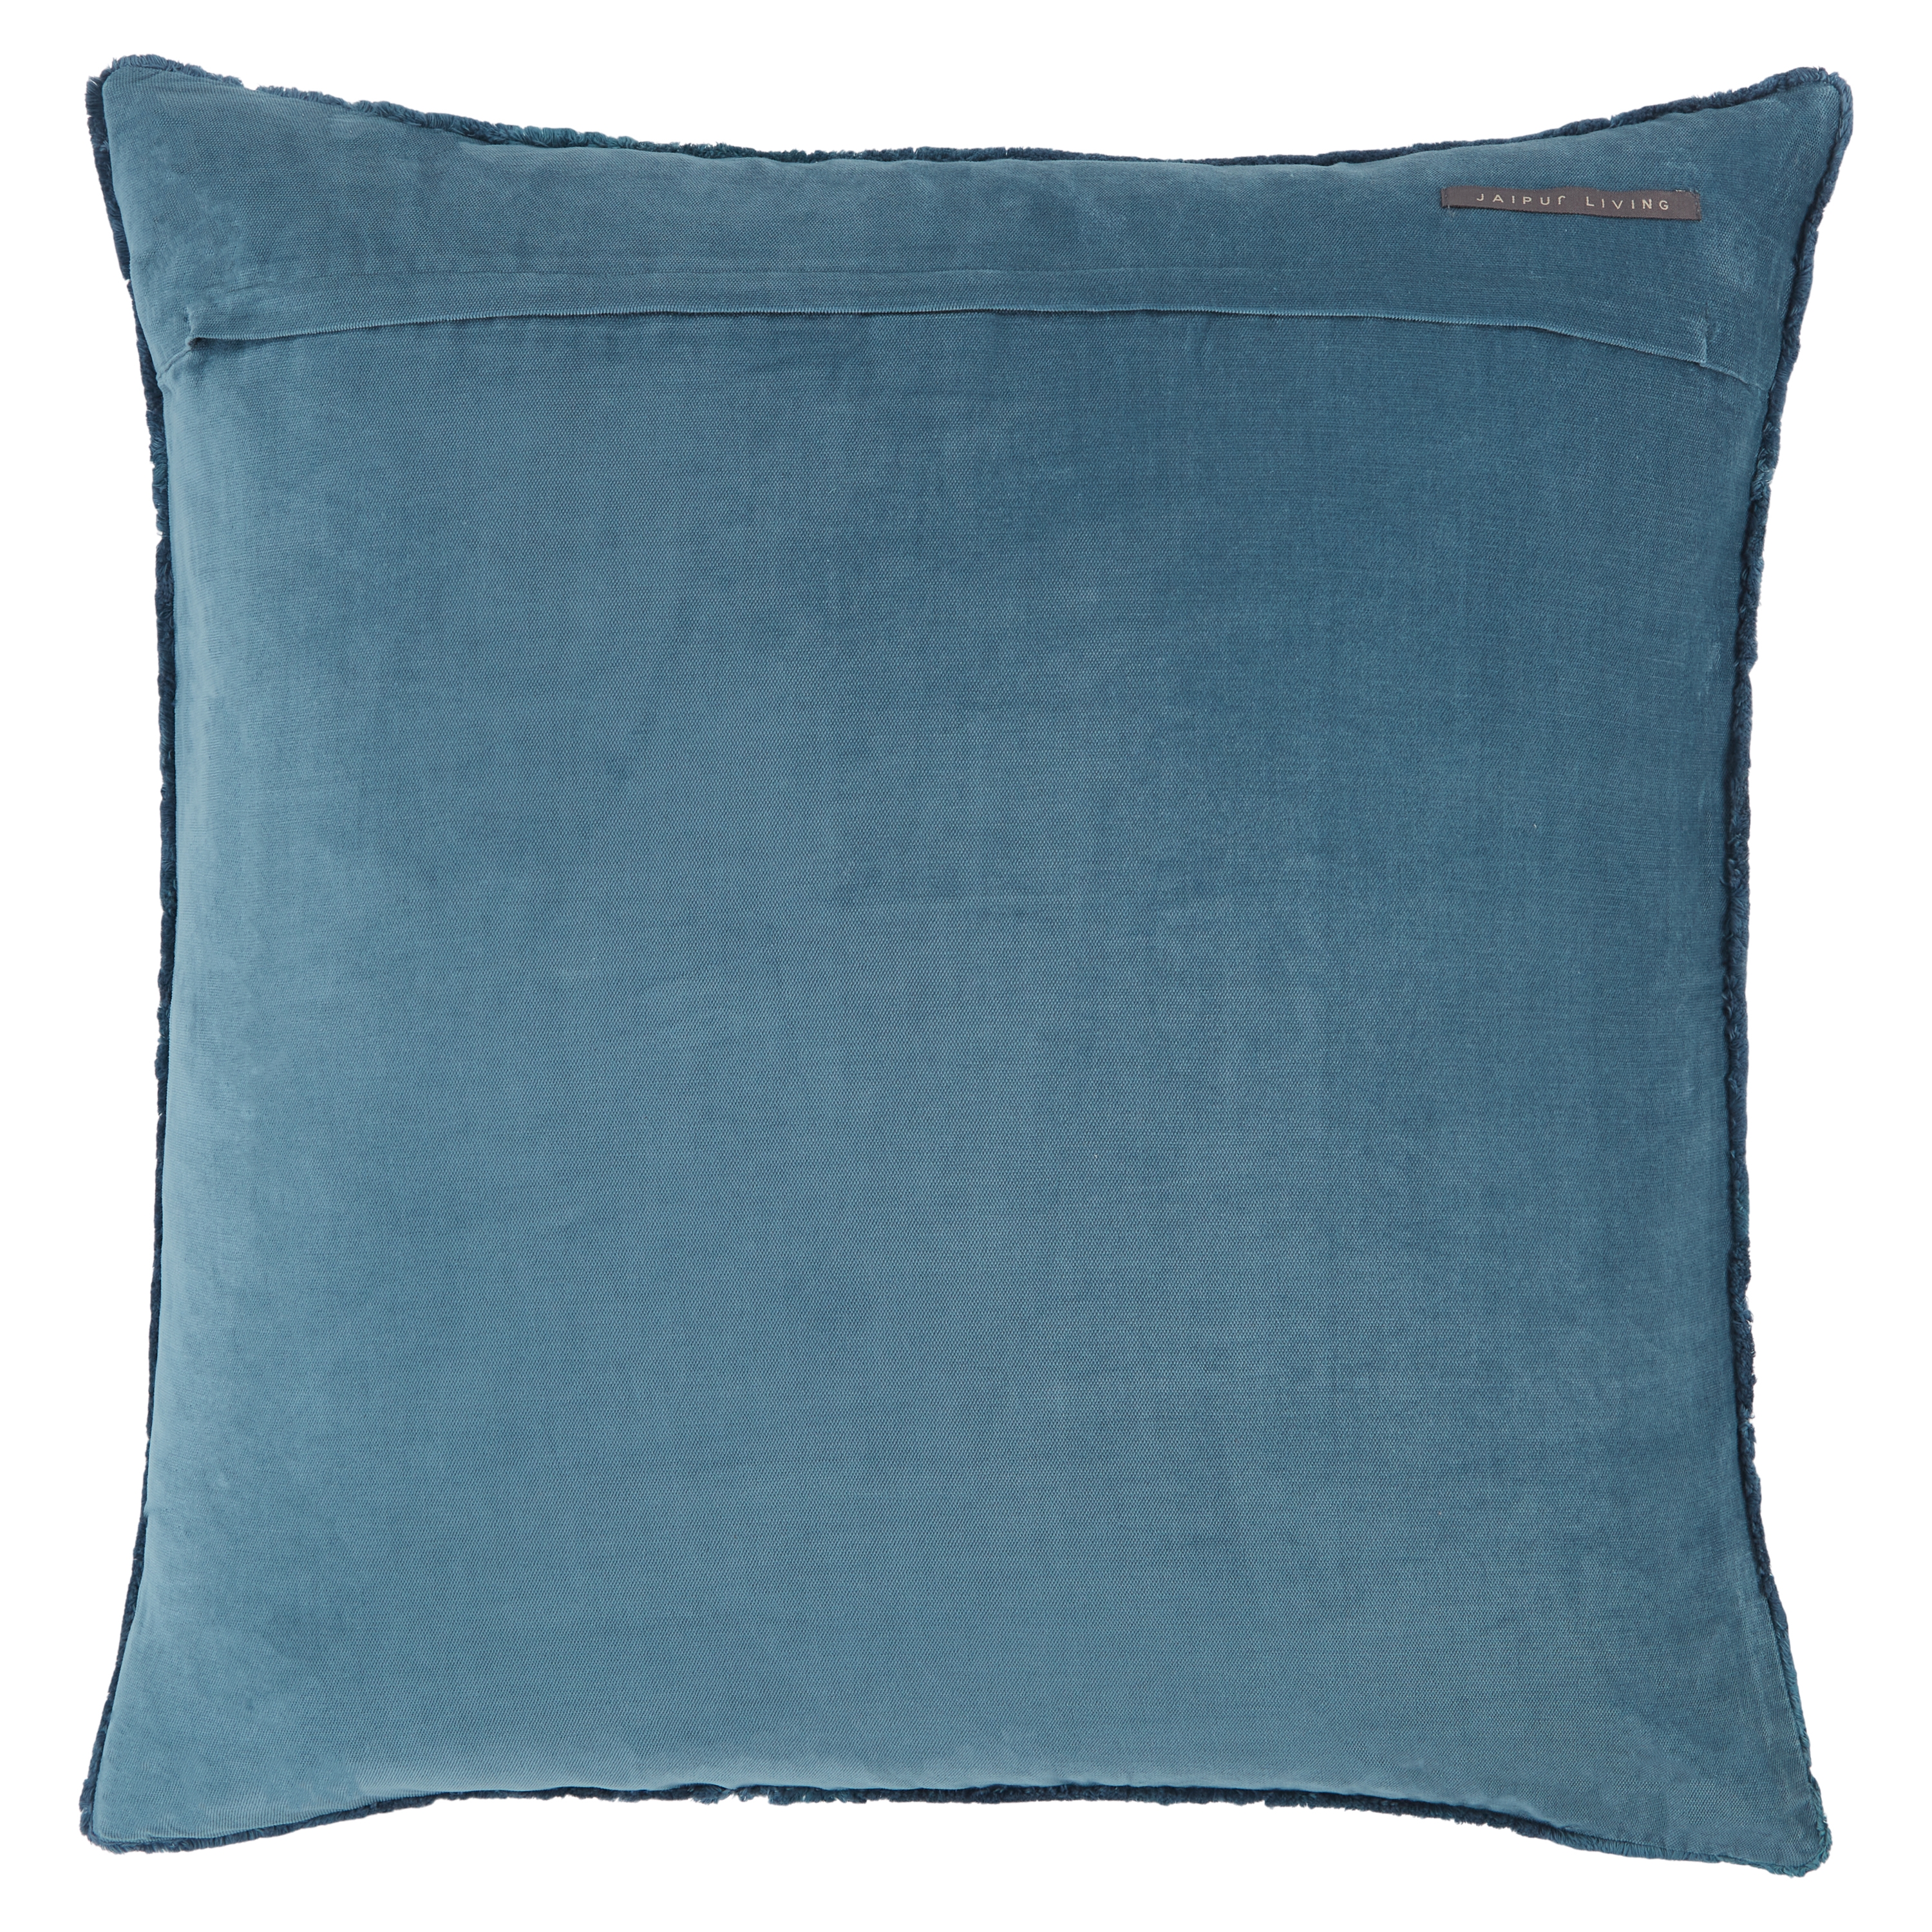 Design (US) Blue 26"X26" Pillow - Image 1